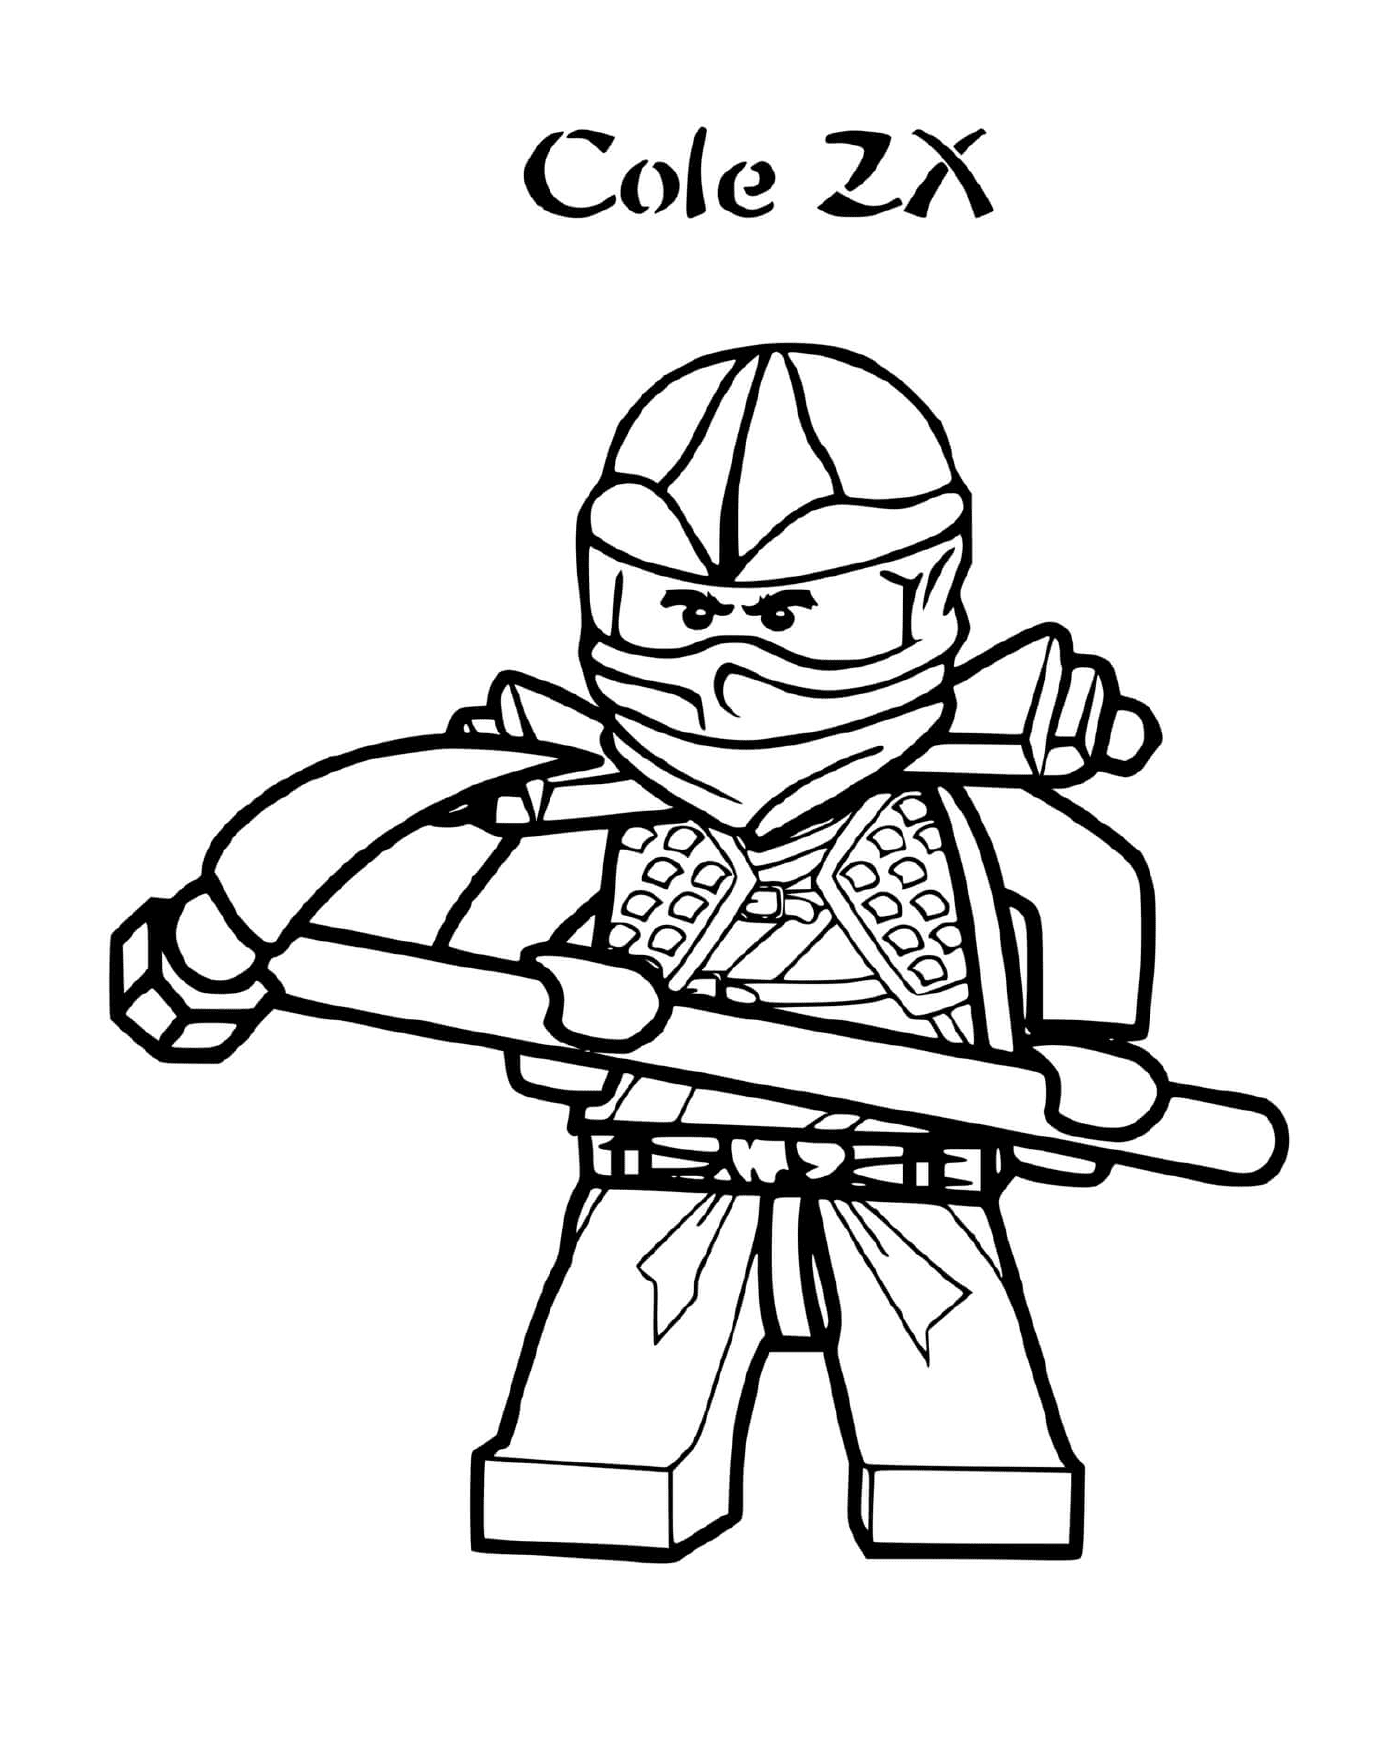  Ninjago : Cole ZX, a ninja 